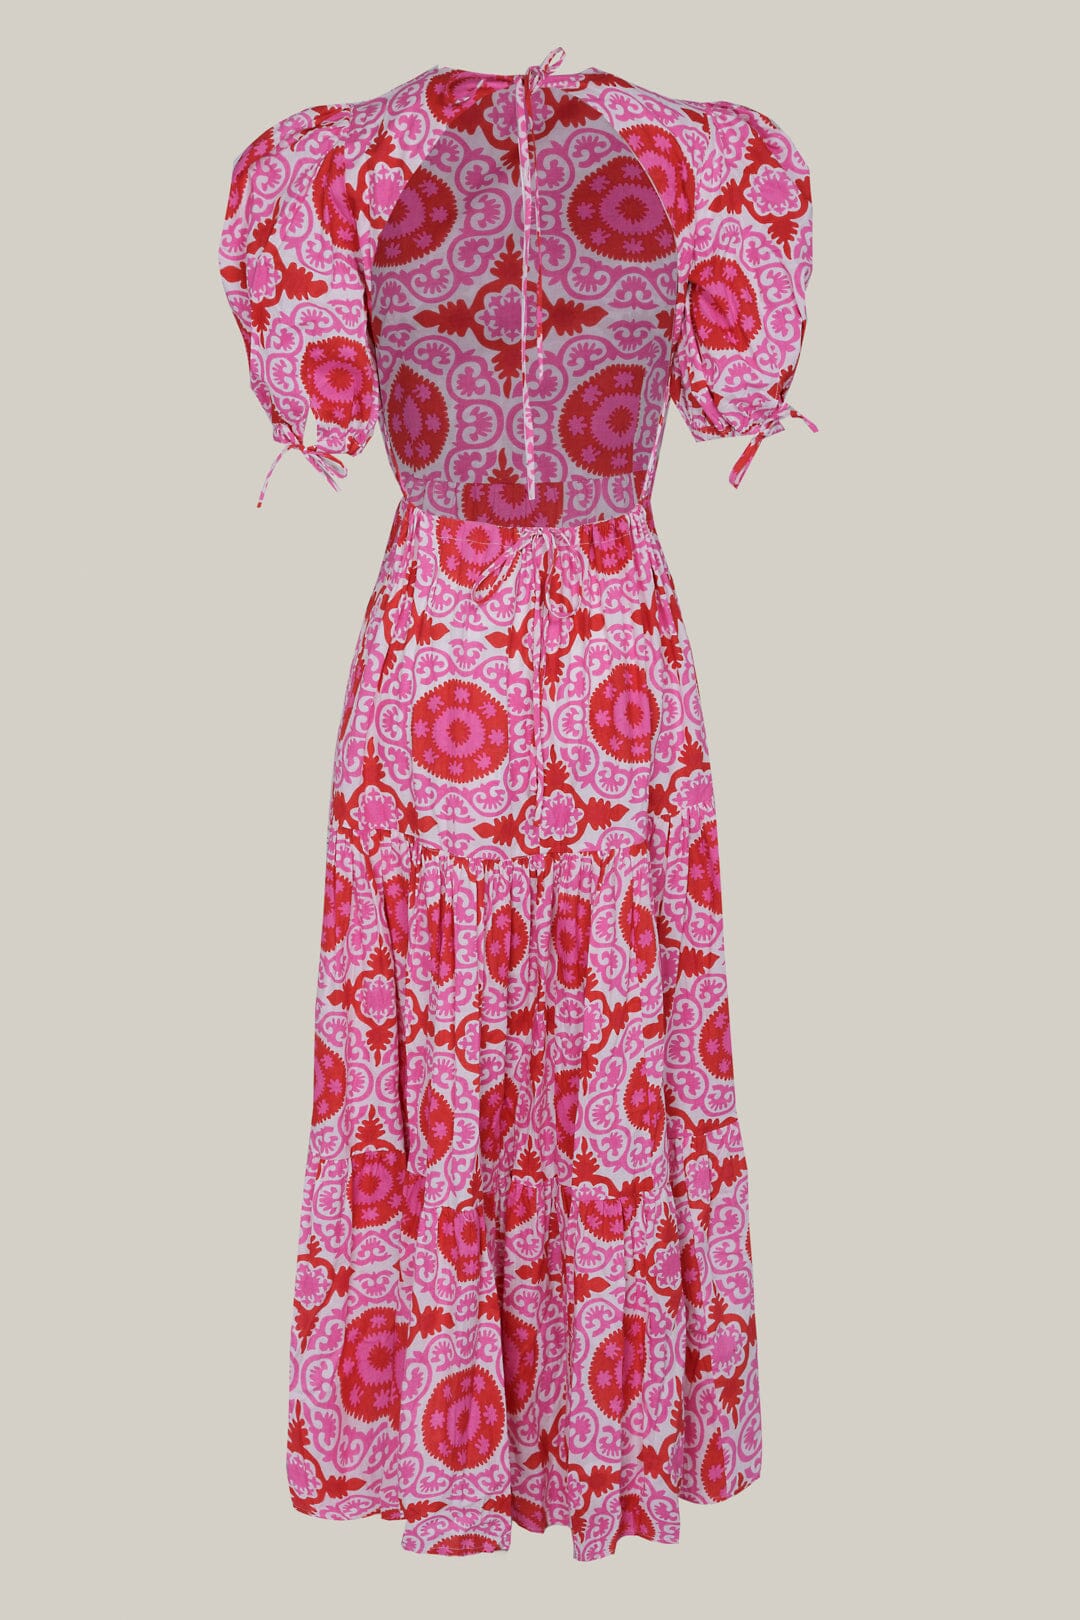 VESTIDO PINK vestidos Philippa 1970 